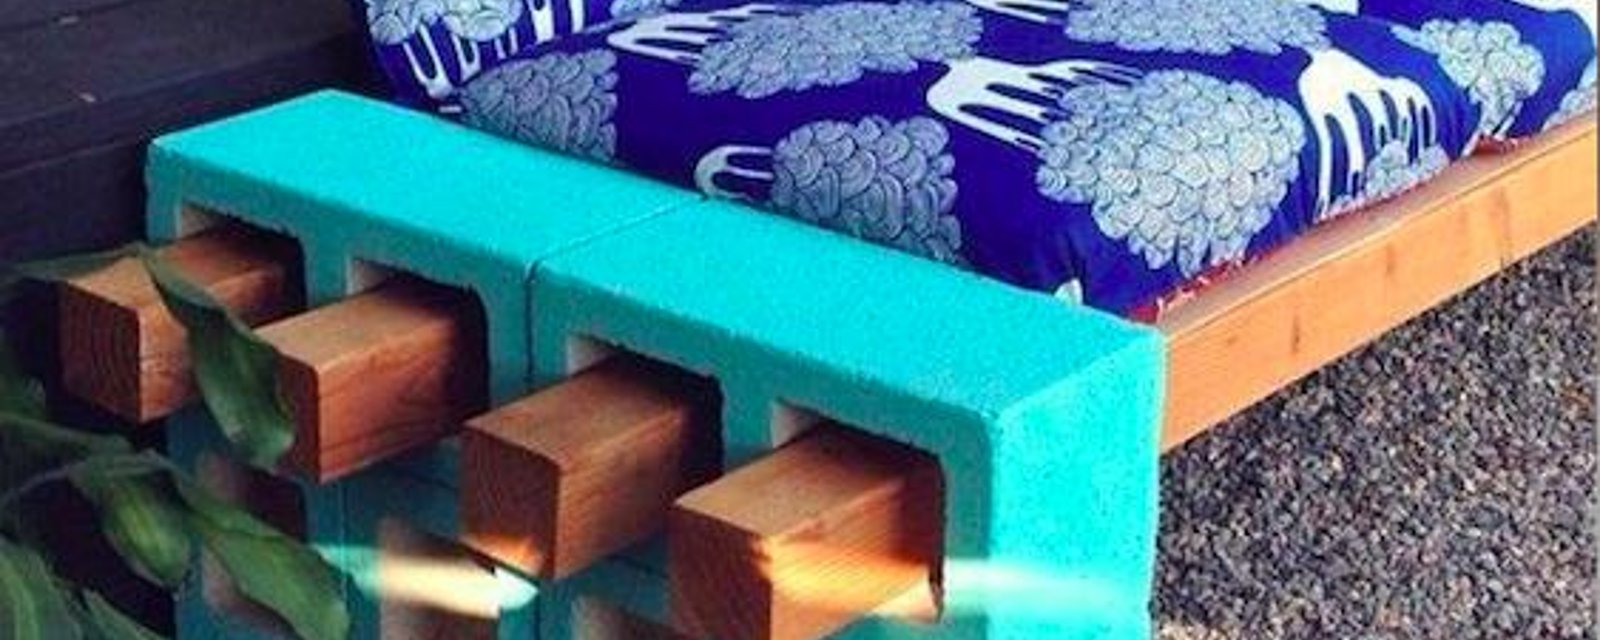 12 façons inusitées de meubler votre décor!